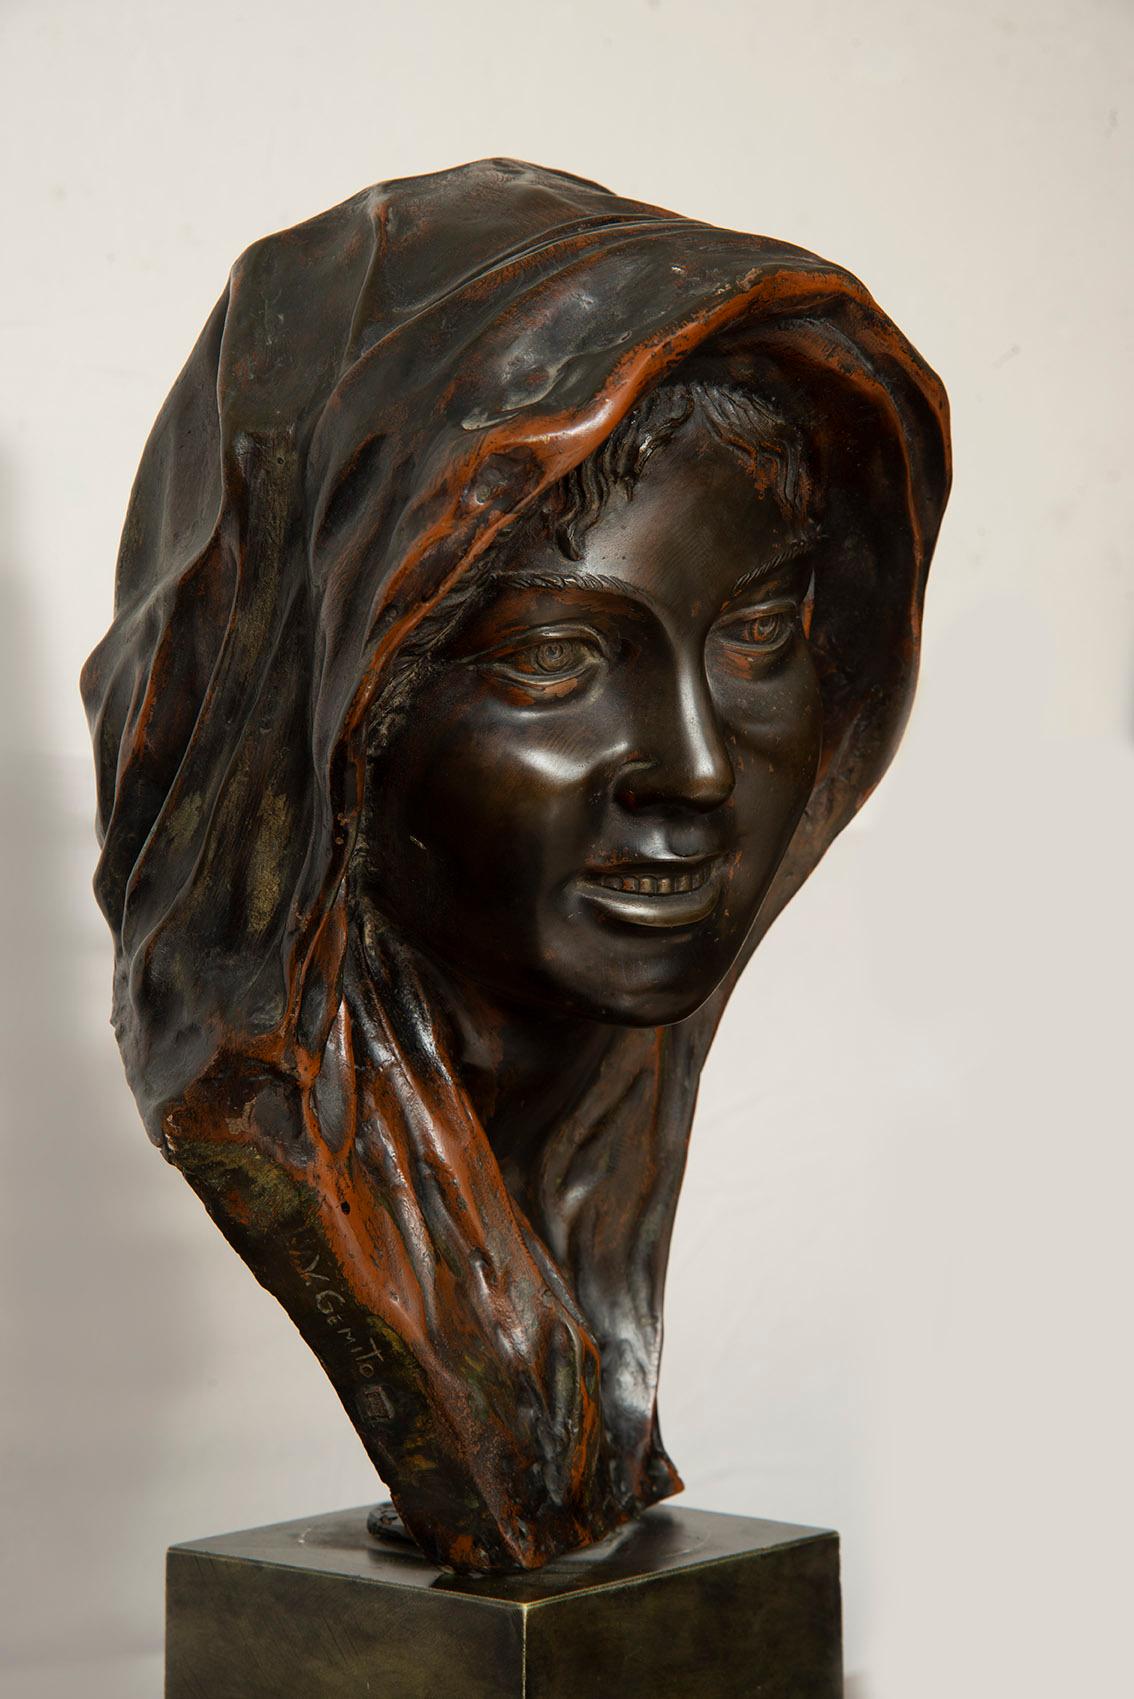 Sculpture ancienne en bronze bruni représentant une tête de femme (NINA) signée Gemito galleria Chiurazzi.

La femme à l'expression un peu triste est l'épouse de l'artiste, qui la représente avec un voile sur la tête.

Vincenzo Gemito (Naples, 16